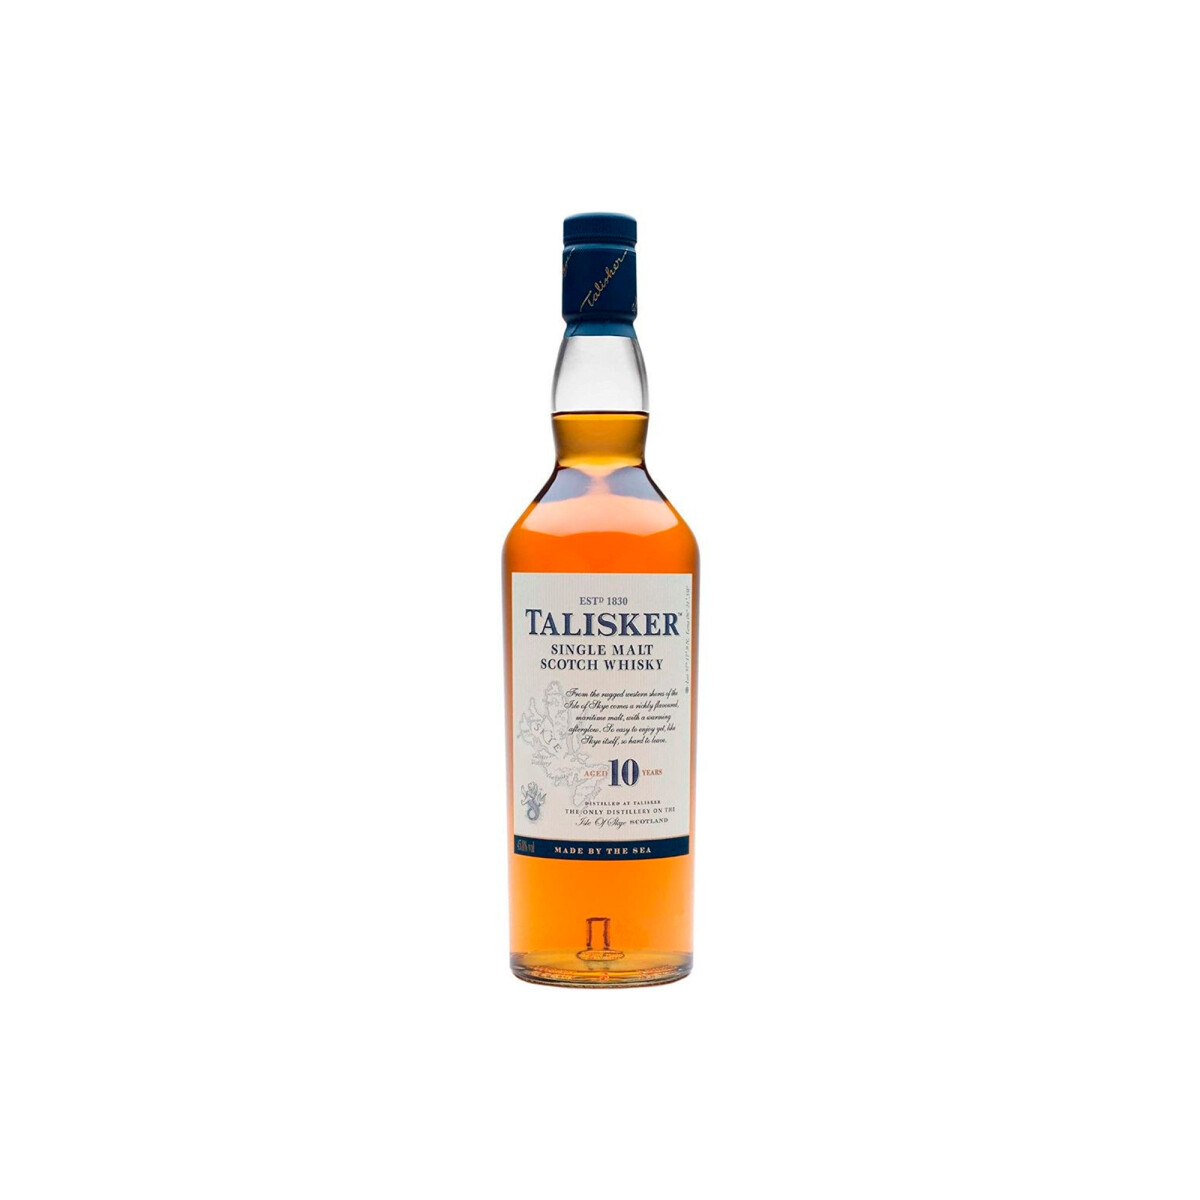 Whisky de Malta Talisker 10 años - 1 Litro 